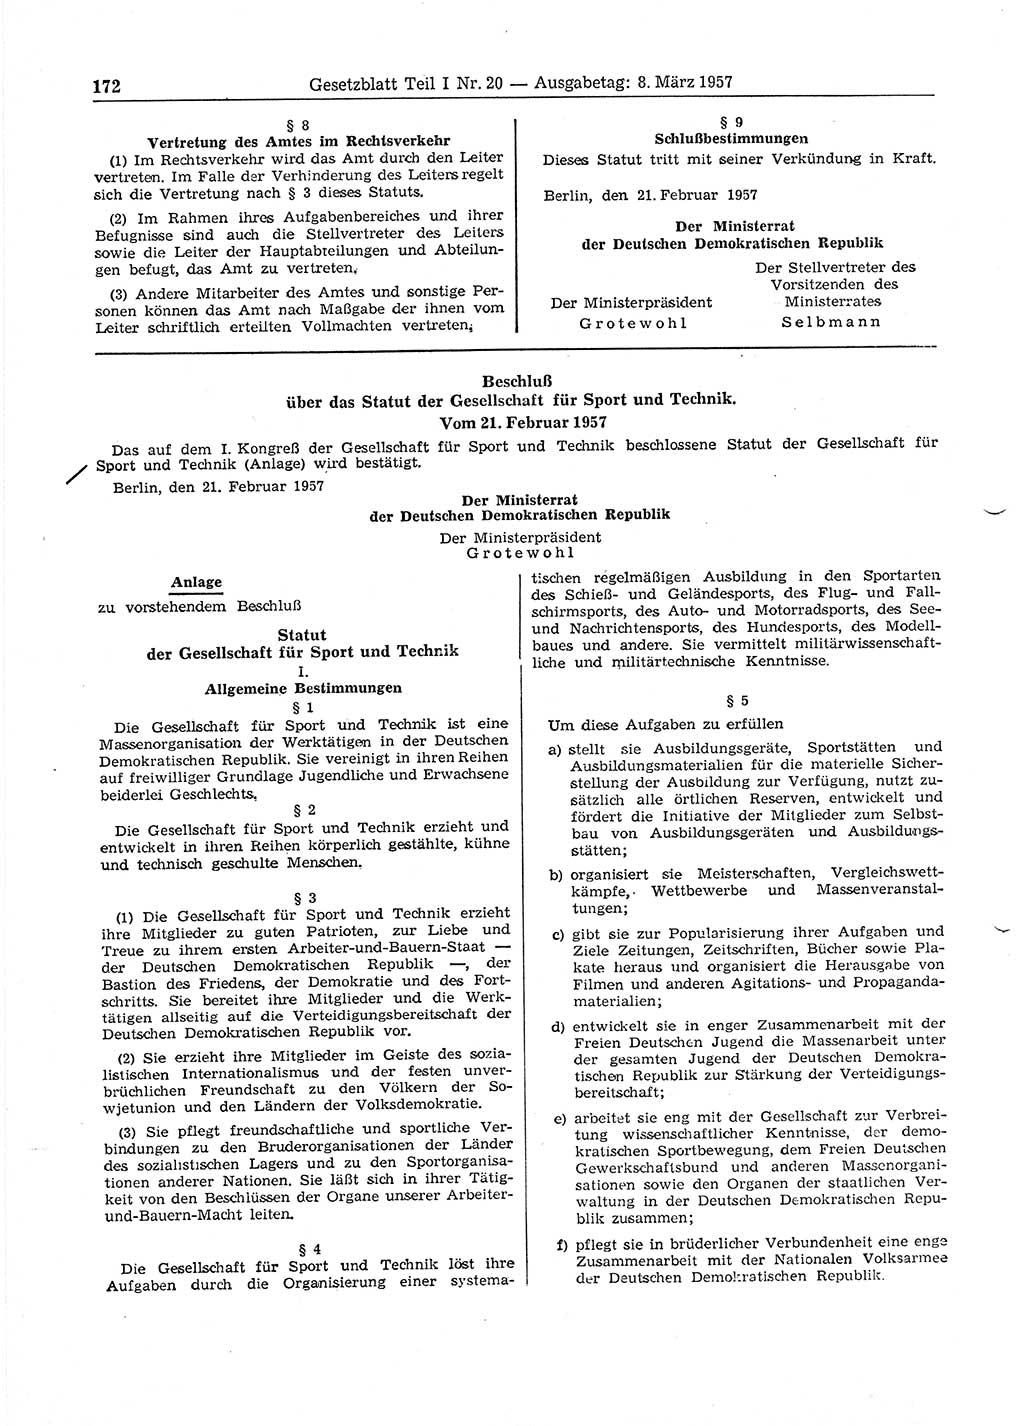 Gesetzblatt (GBl.) der Deutschen Demokratischen Republik (DDR) Teil Ⅰ 1957, Seite 172 (GBl. DDR Ⅰ 1957, S. 172)